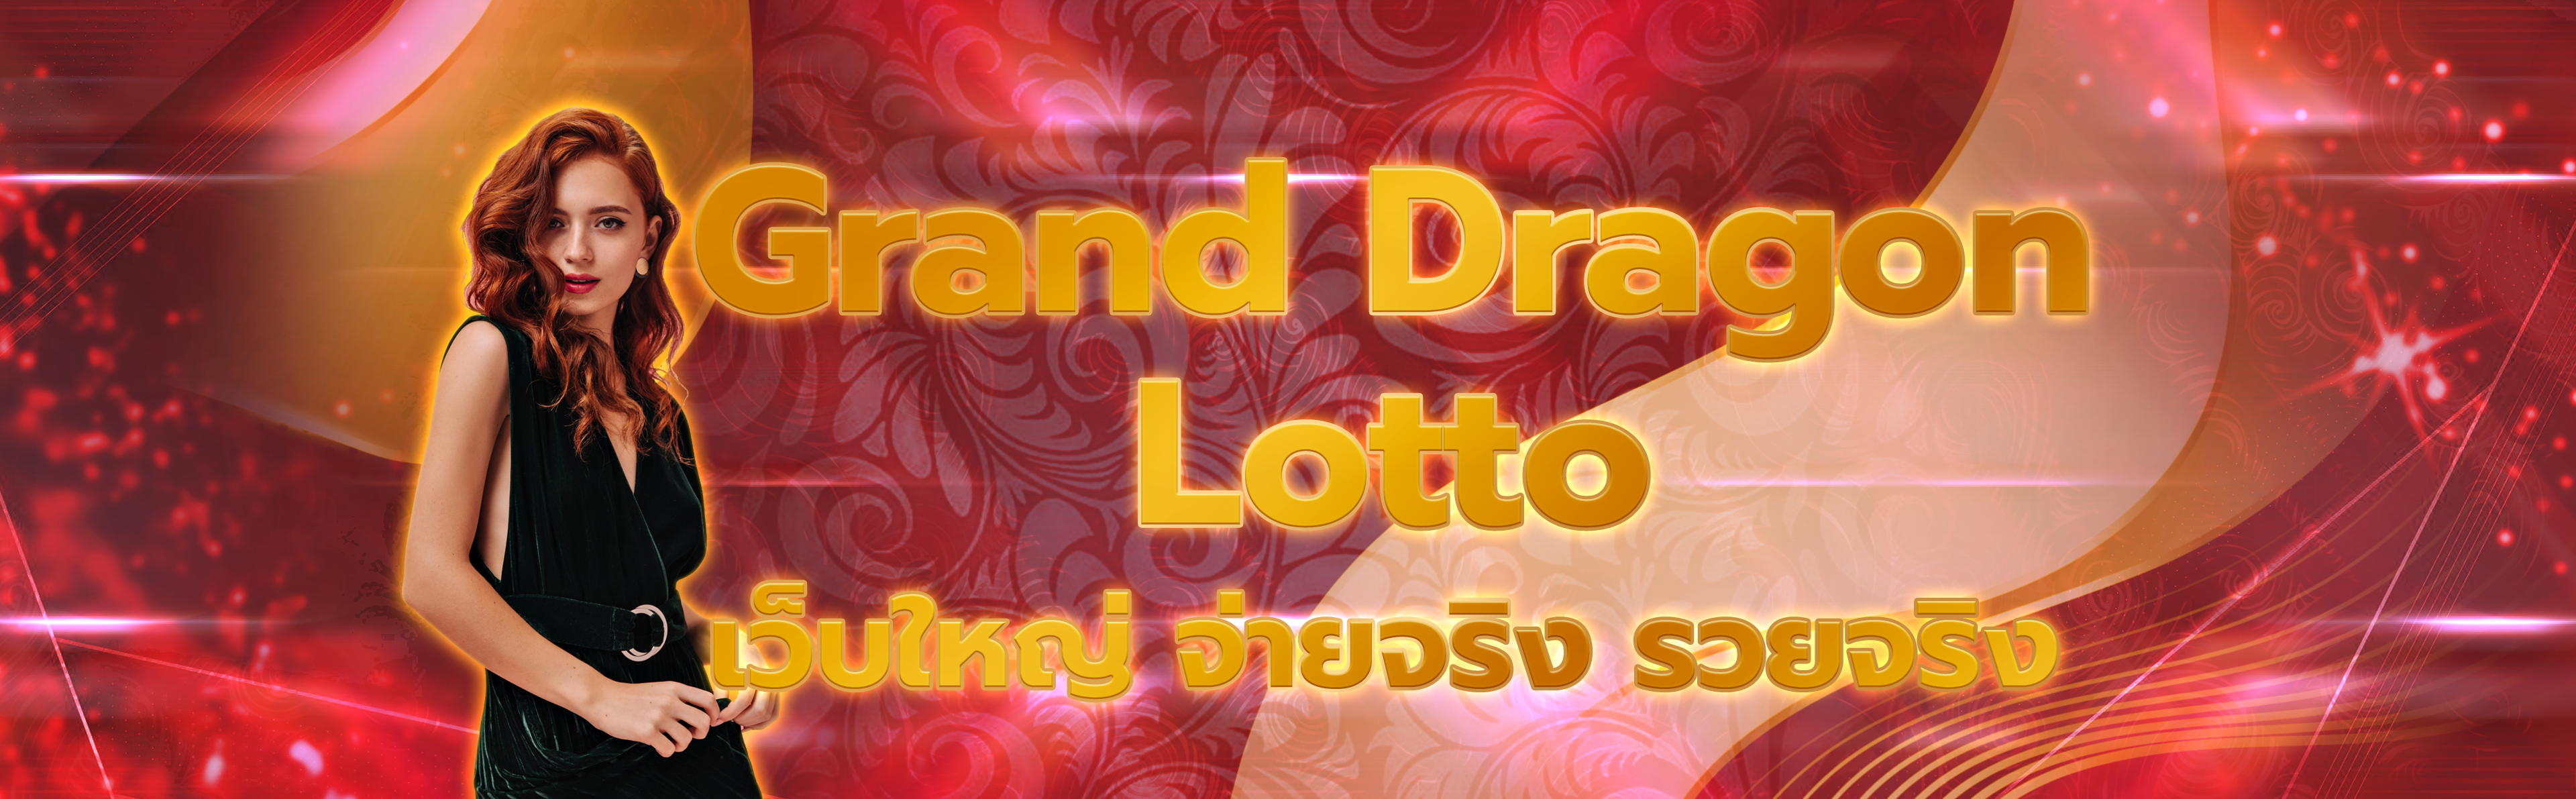 Grand Dragon Lotto